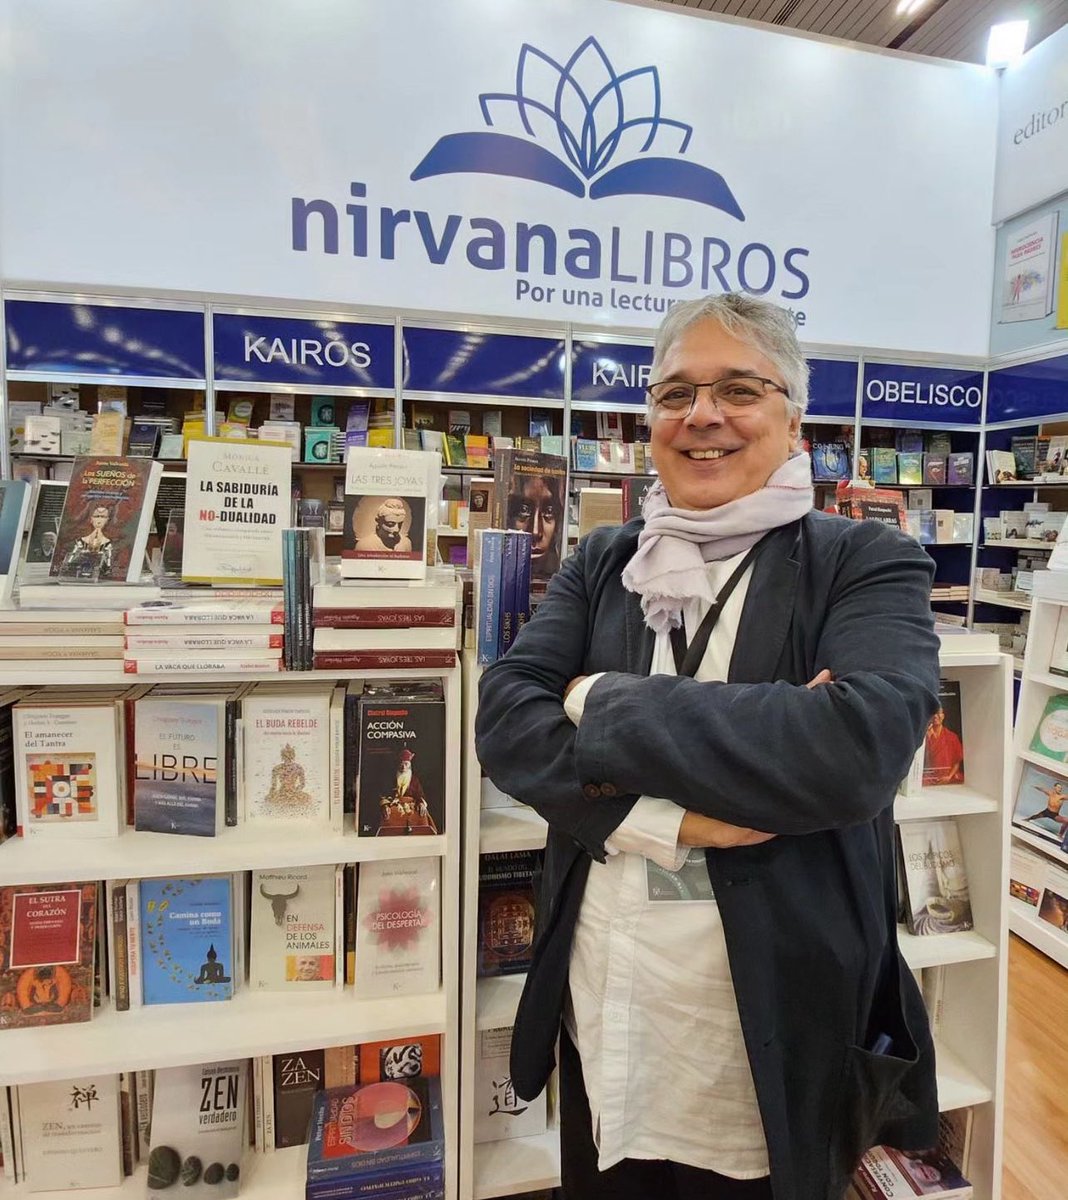 Estos días estamos el Área Internacional de la @FILGuadalajara Nos podéis encontrar en el stand KK9 de Nirvana Libros 📍. ¡Os esperamos!,